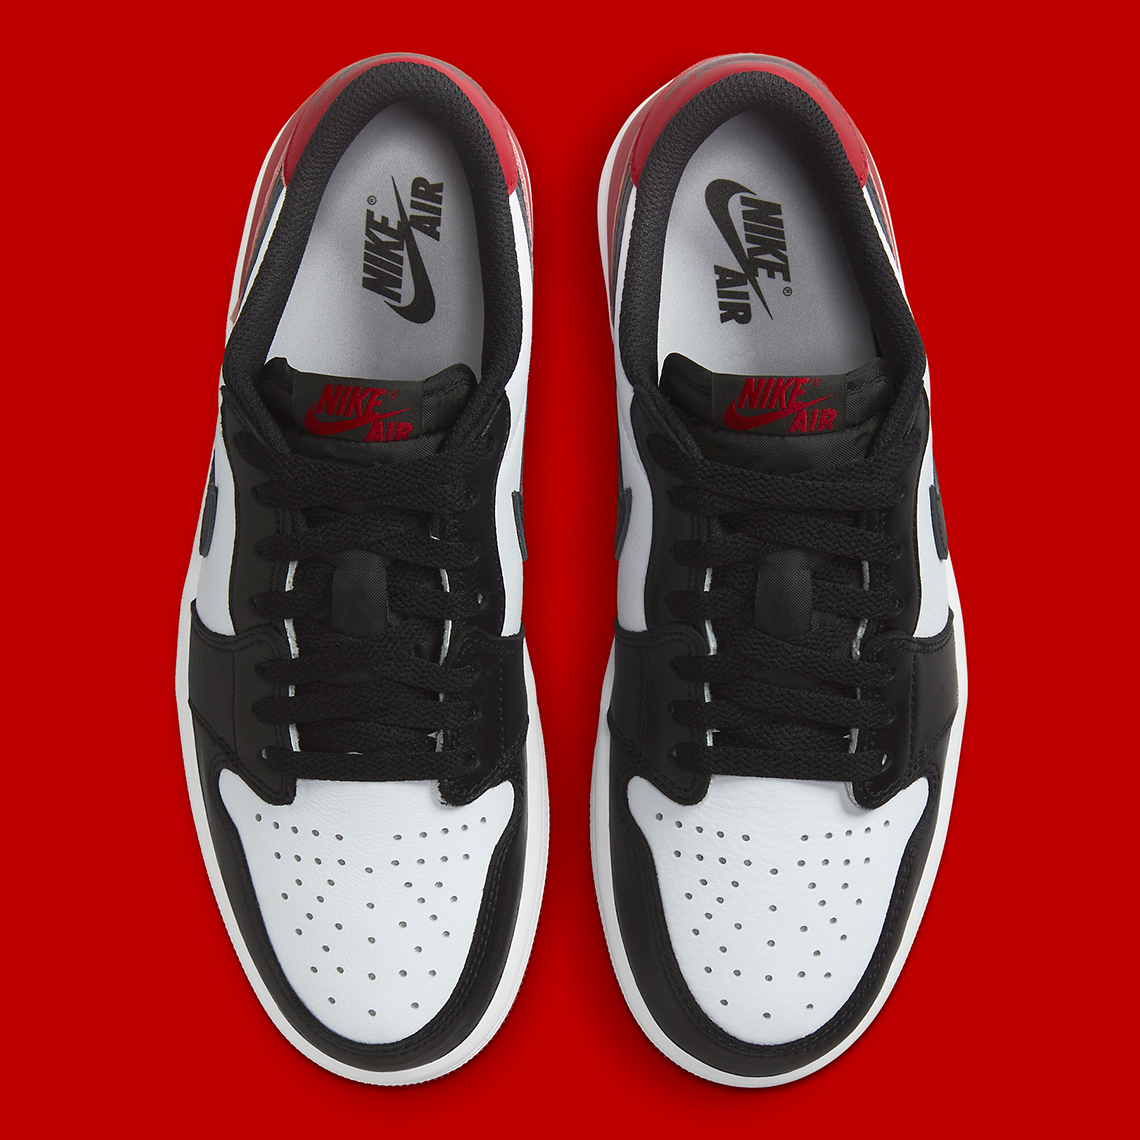 Jordan 1 Low Black Toe Cz0790 106 Release Date 5